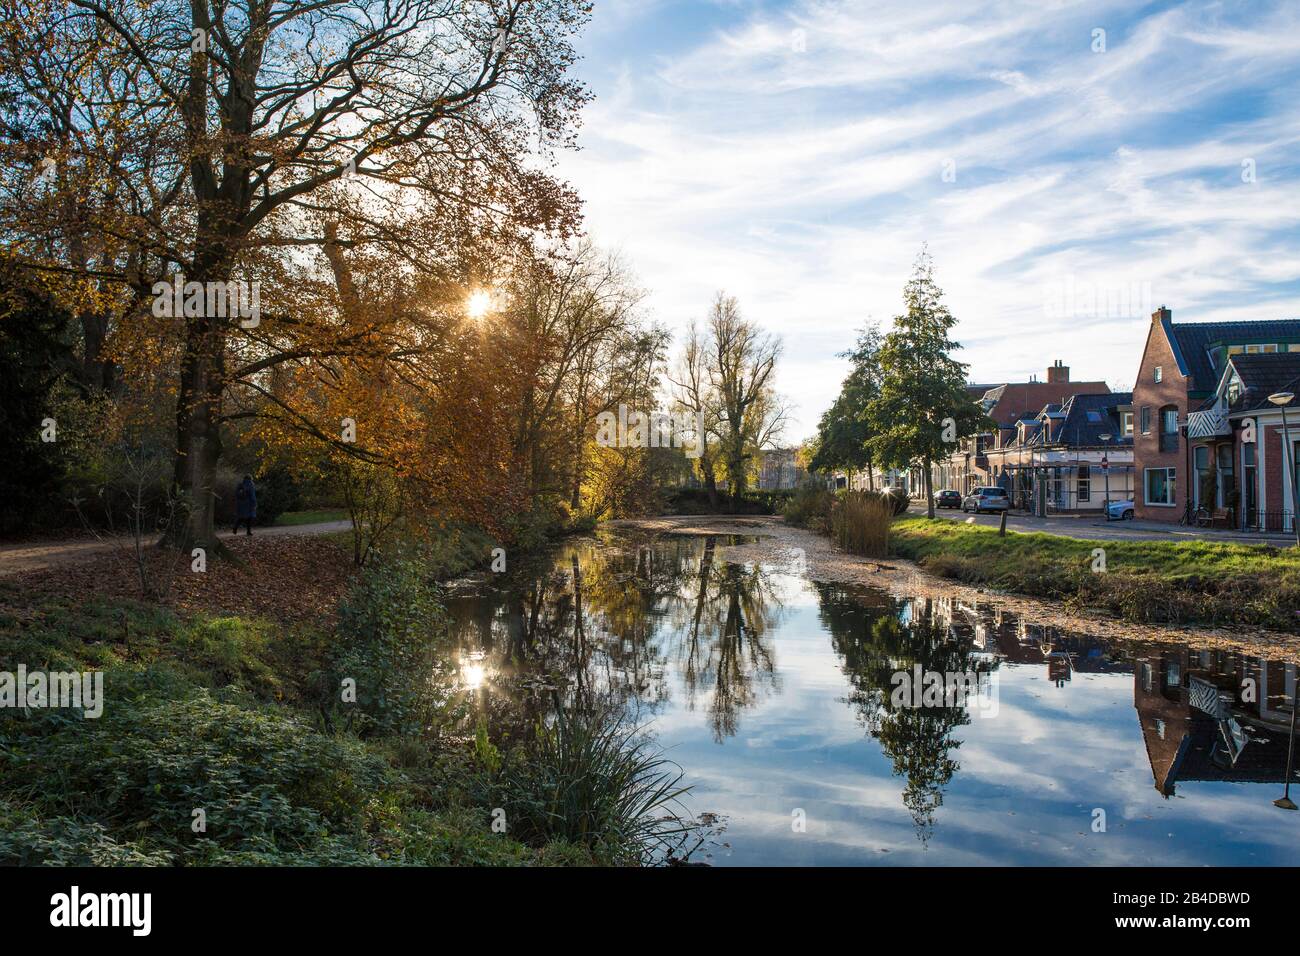 Europa, Niederlande, Groningen: Blick vom Park Noorderplantsoen zu den Häusern am anderen Ufer Stockfoto